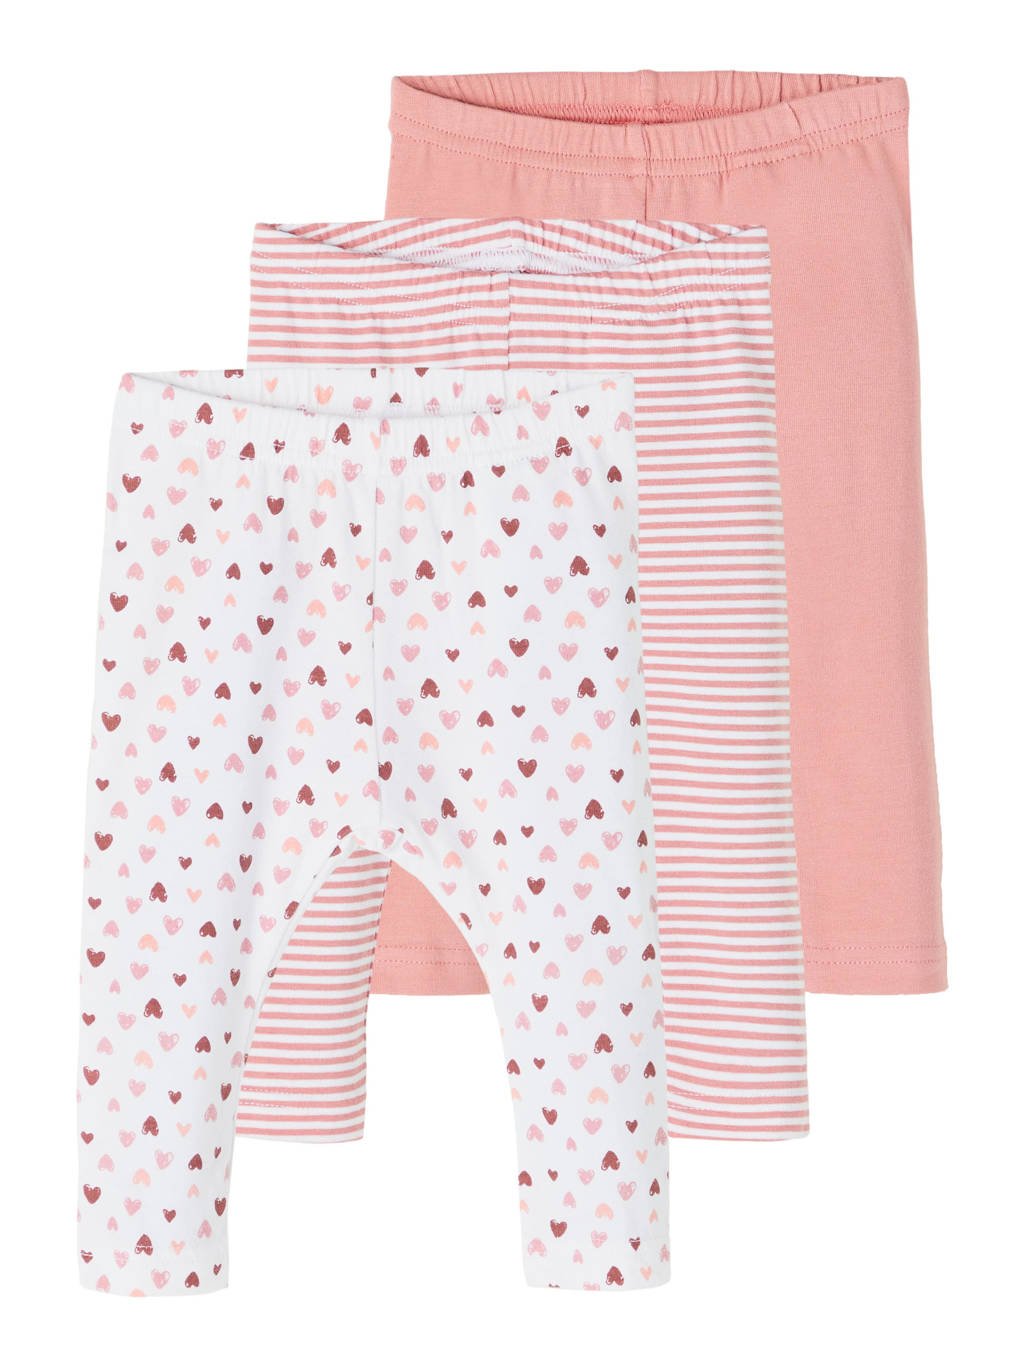 NAME IT BABY legging - set van 3 roze/wit